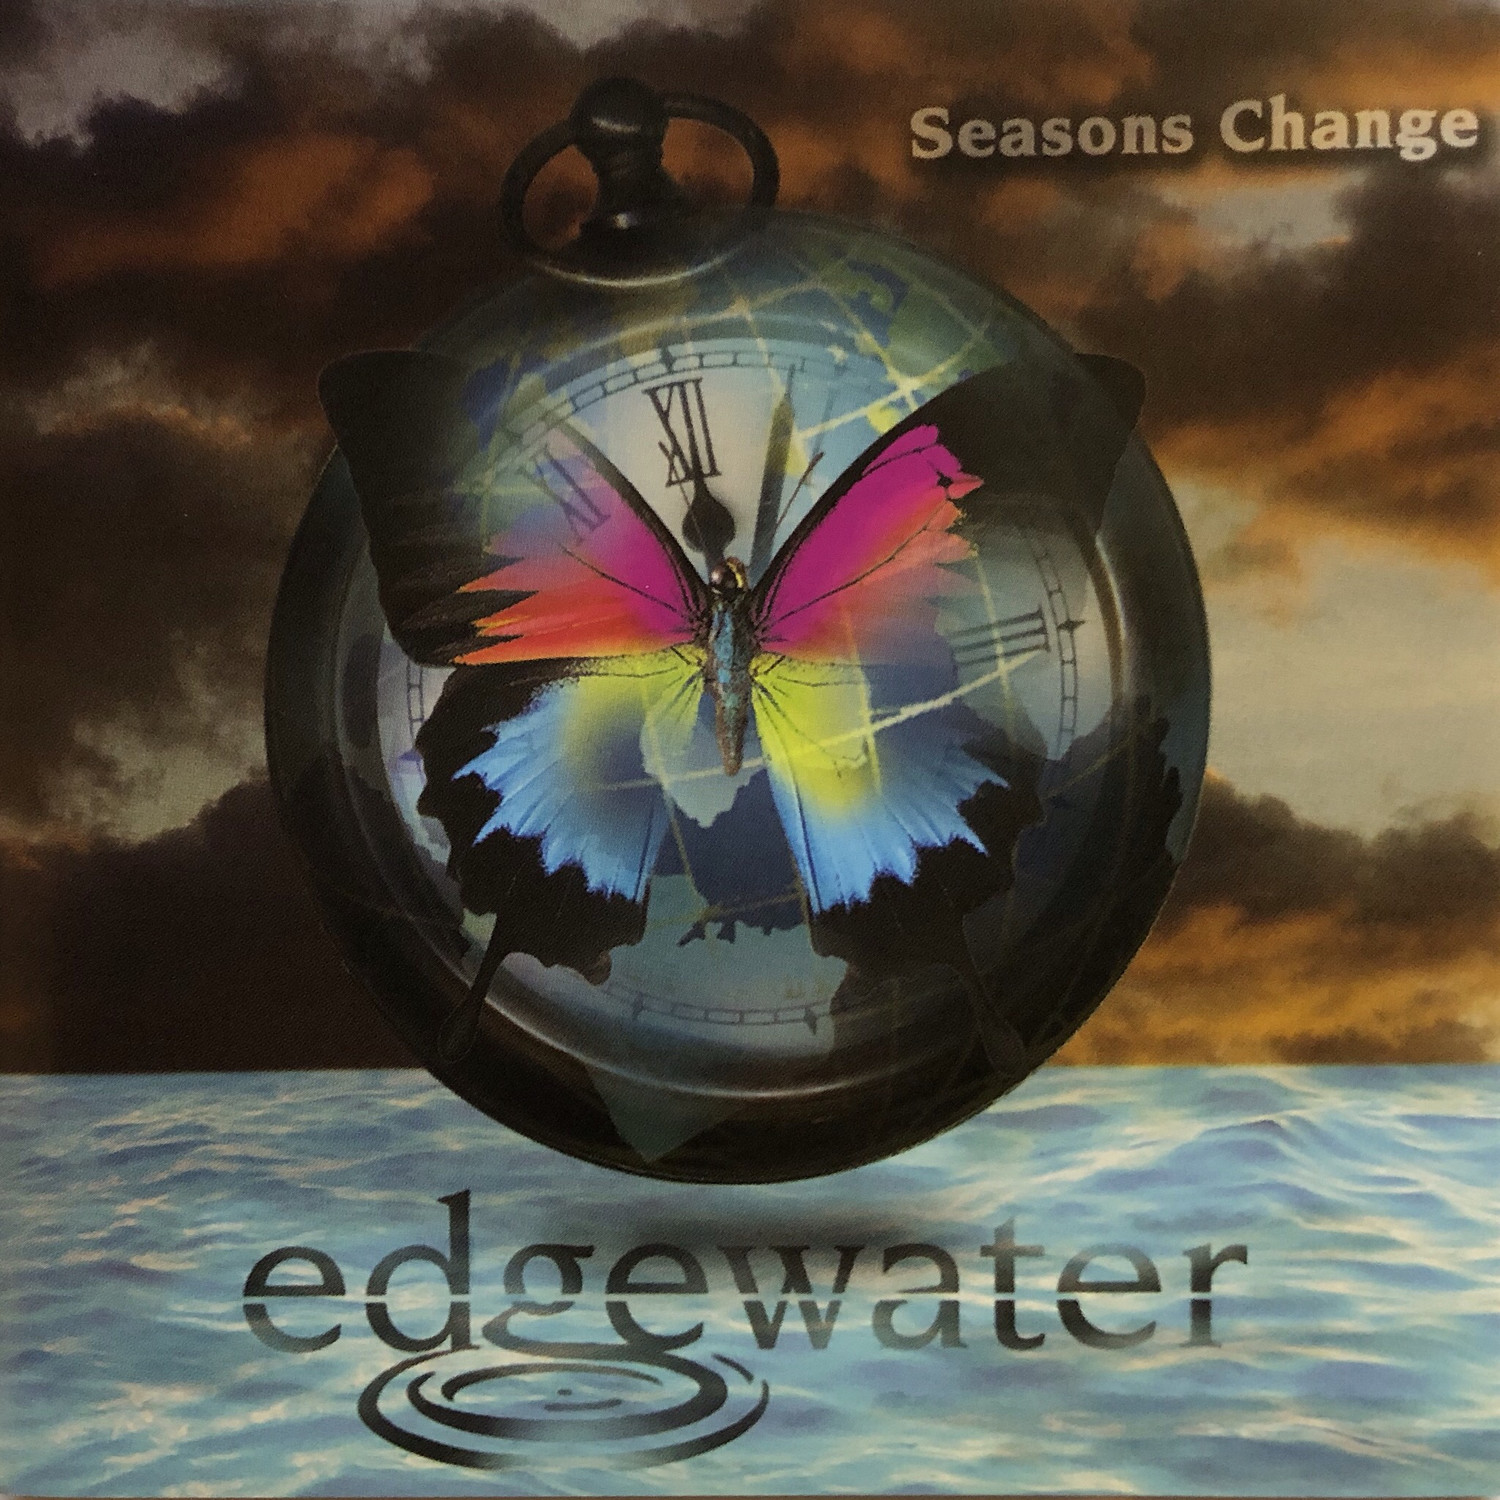 Seasons Change (Edgewater, 2003)